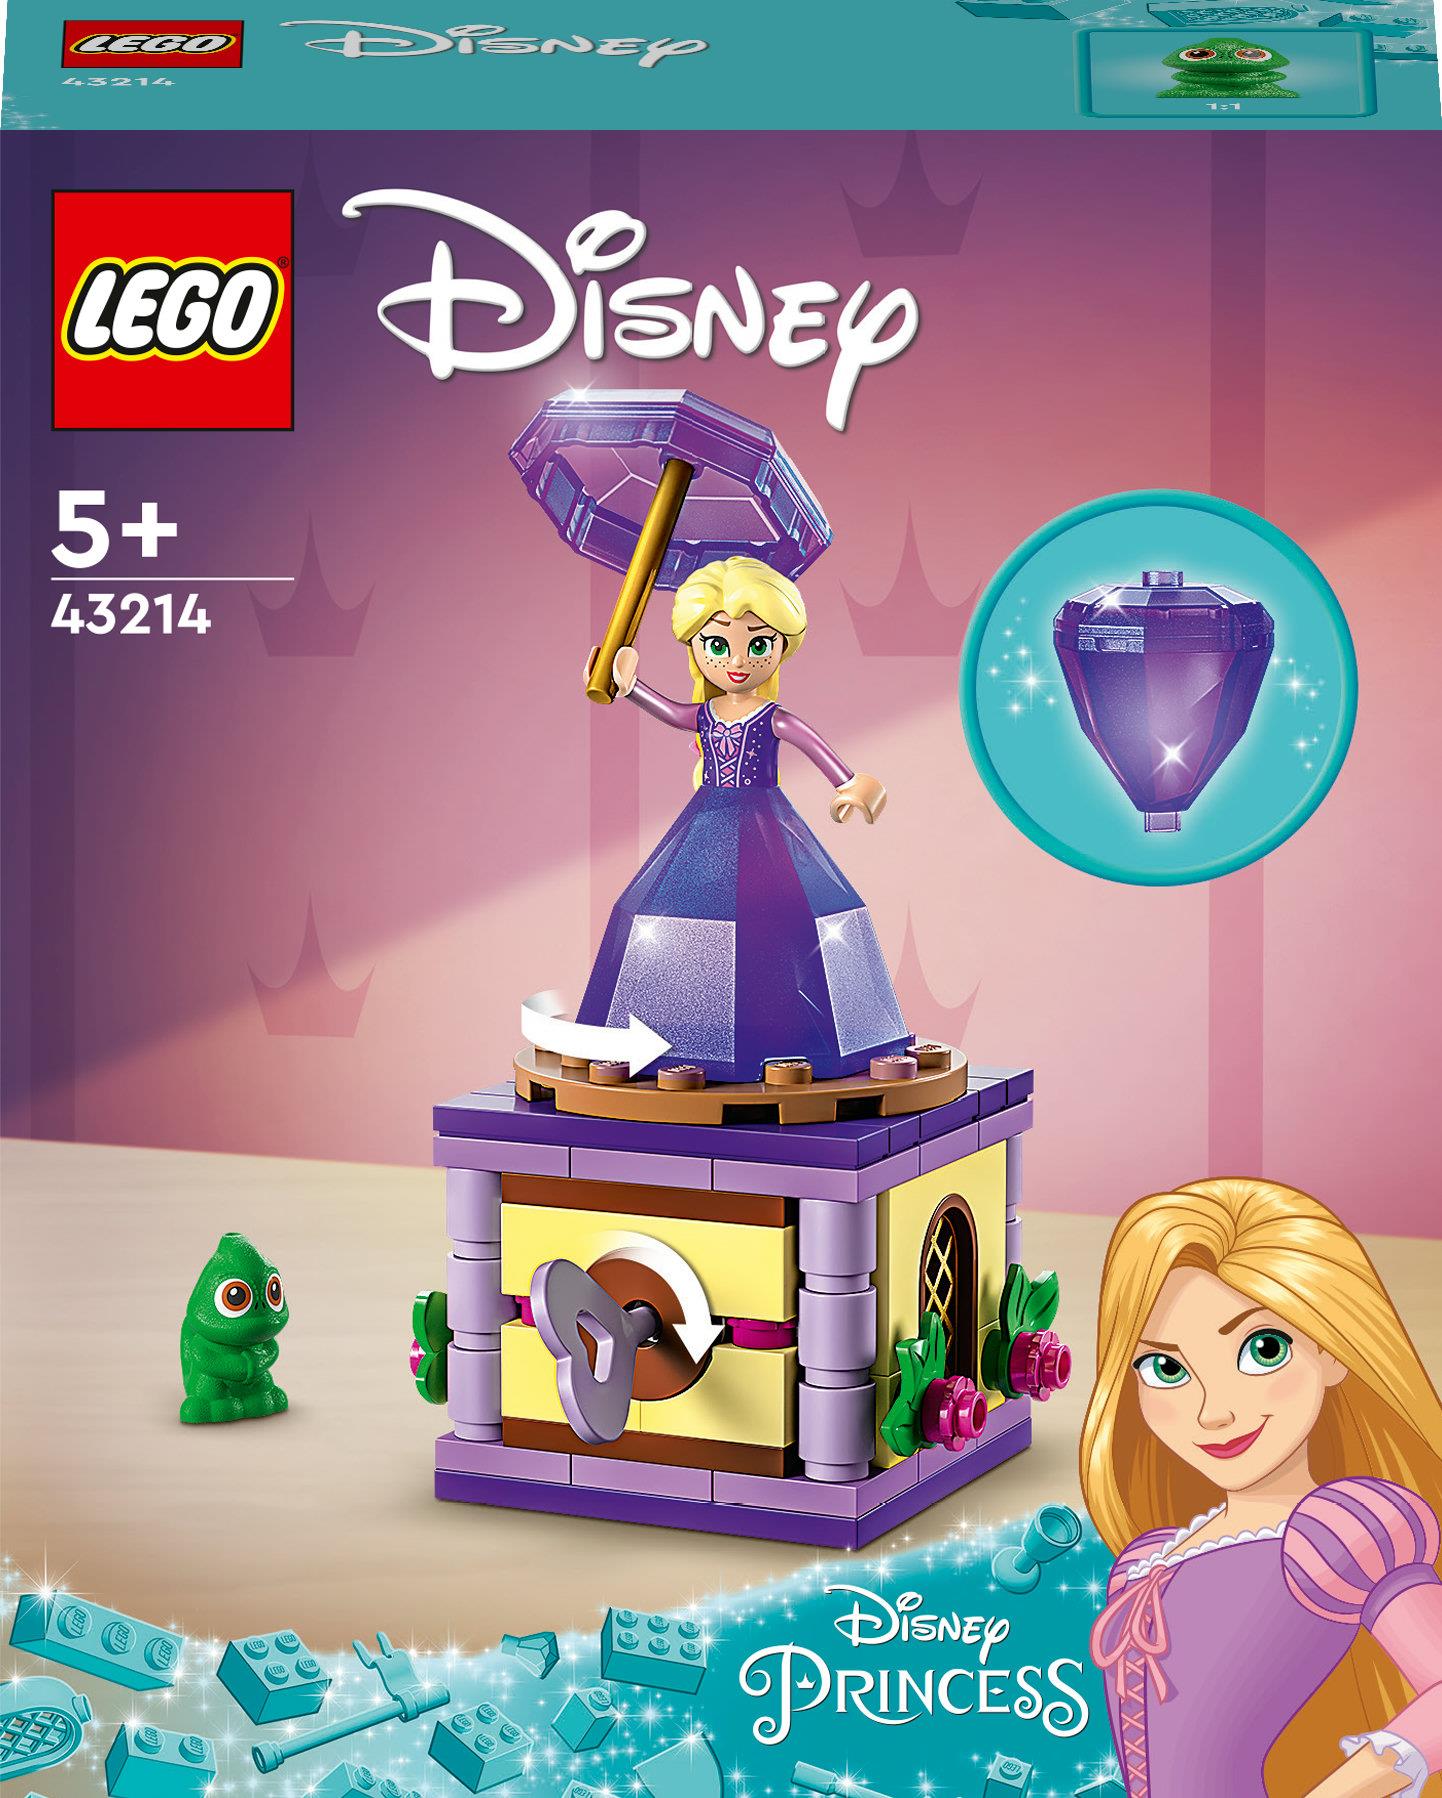 LEGO Disney Princess 43214